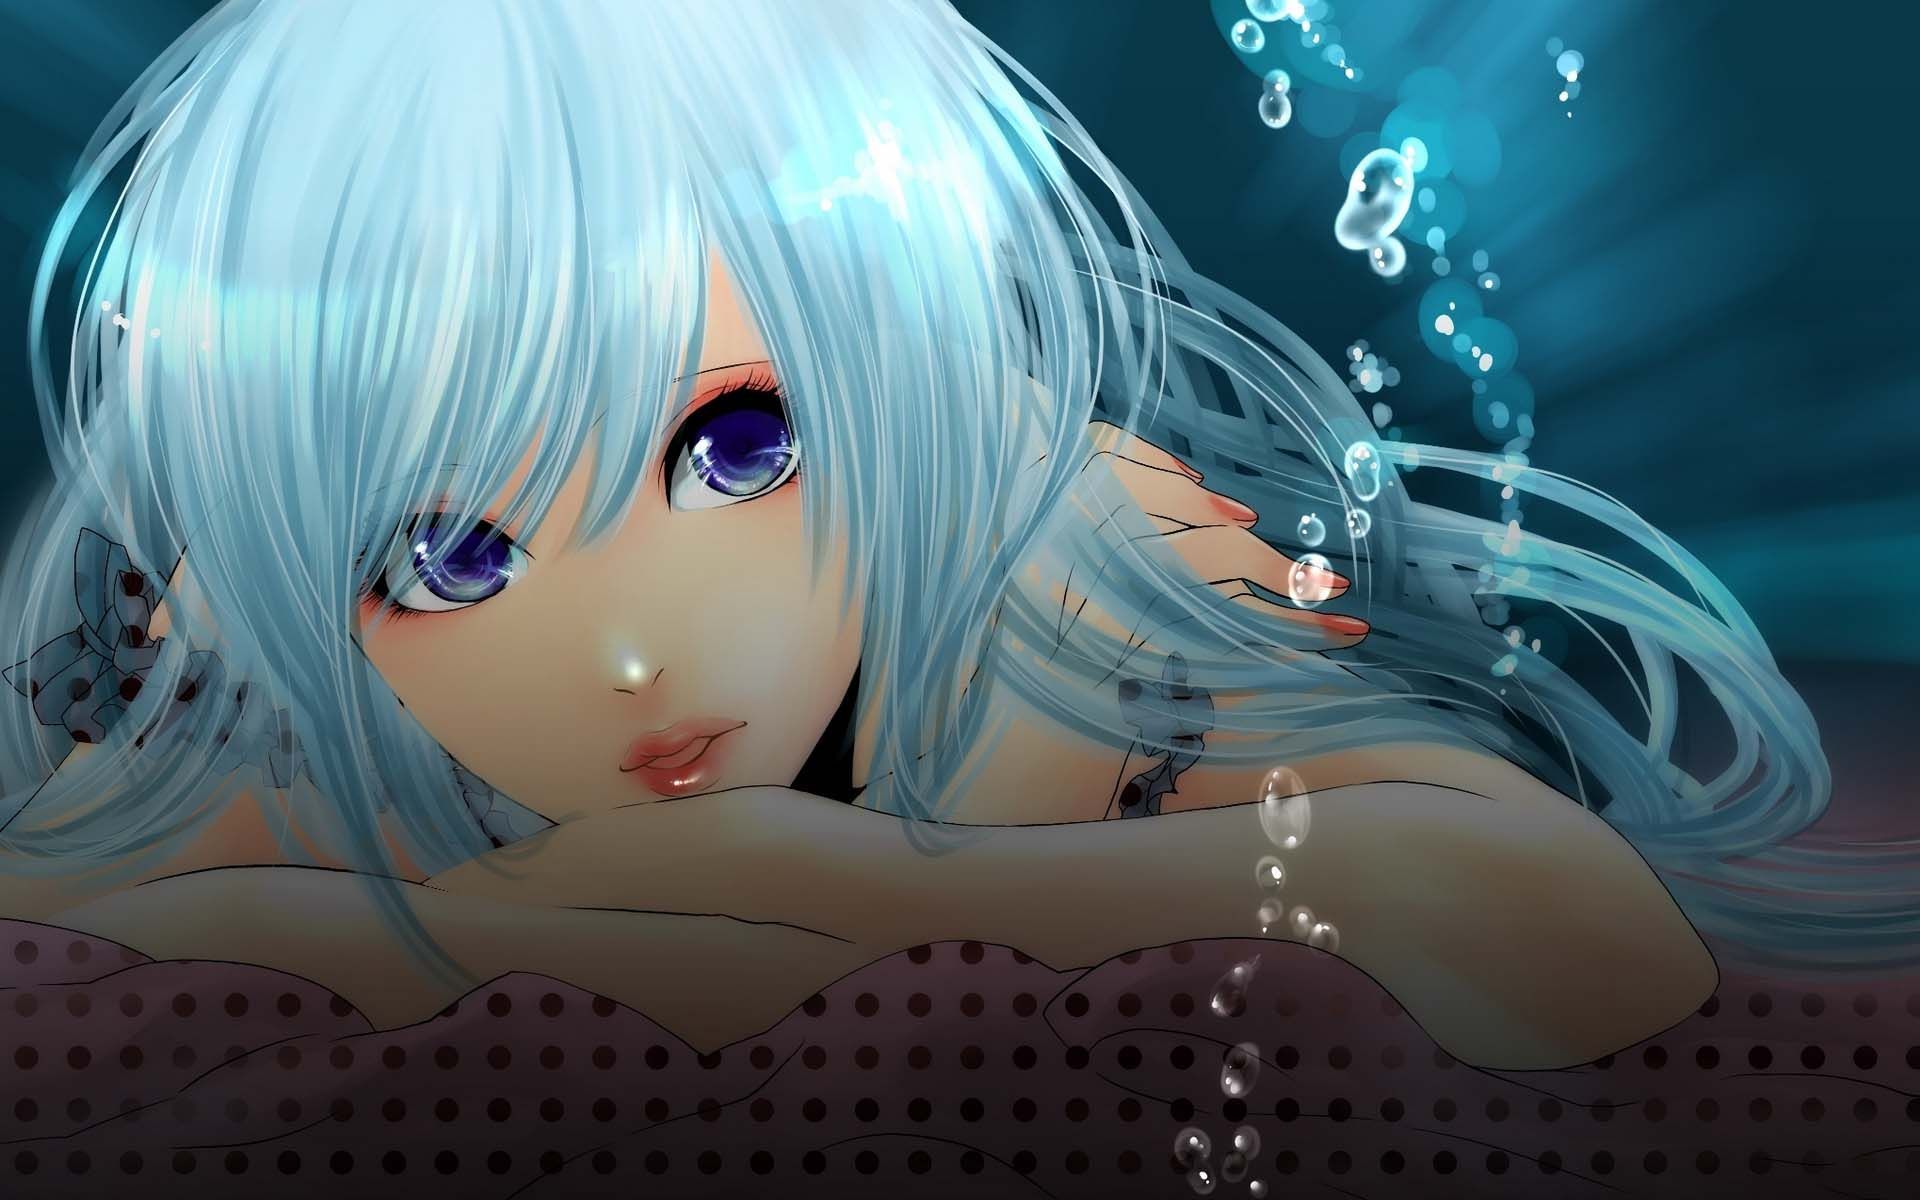 Girl In Dream. HD Anime Wallpaper for Mobile and Desktop